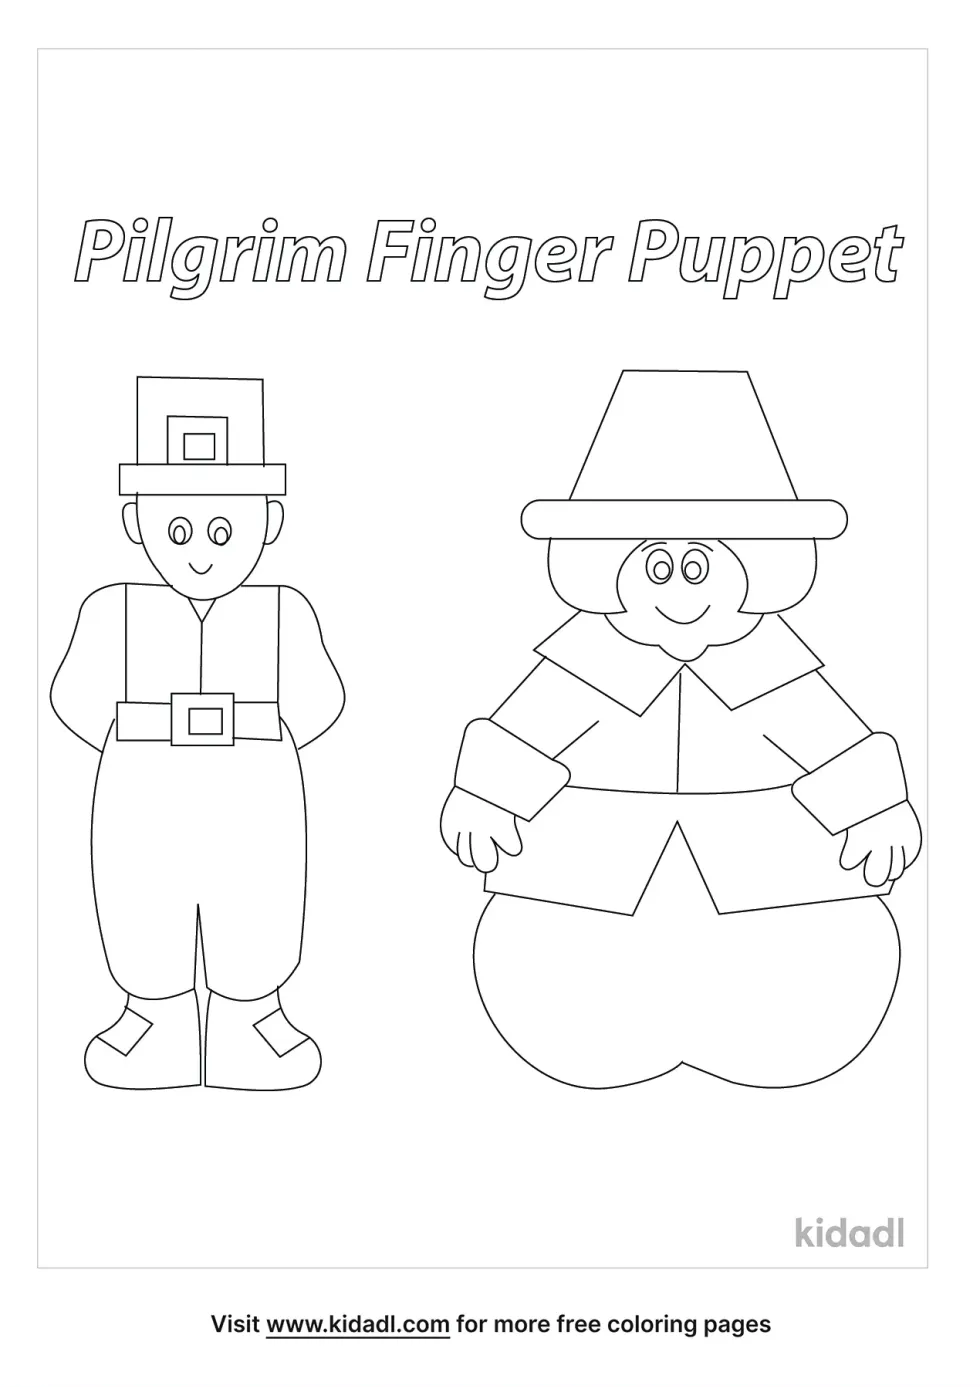 Pilgrim Finger Puppets